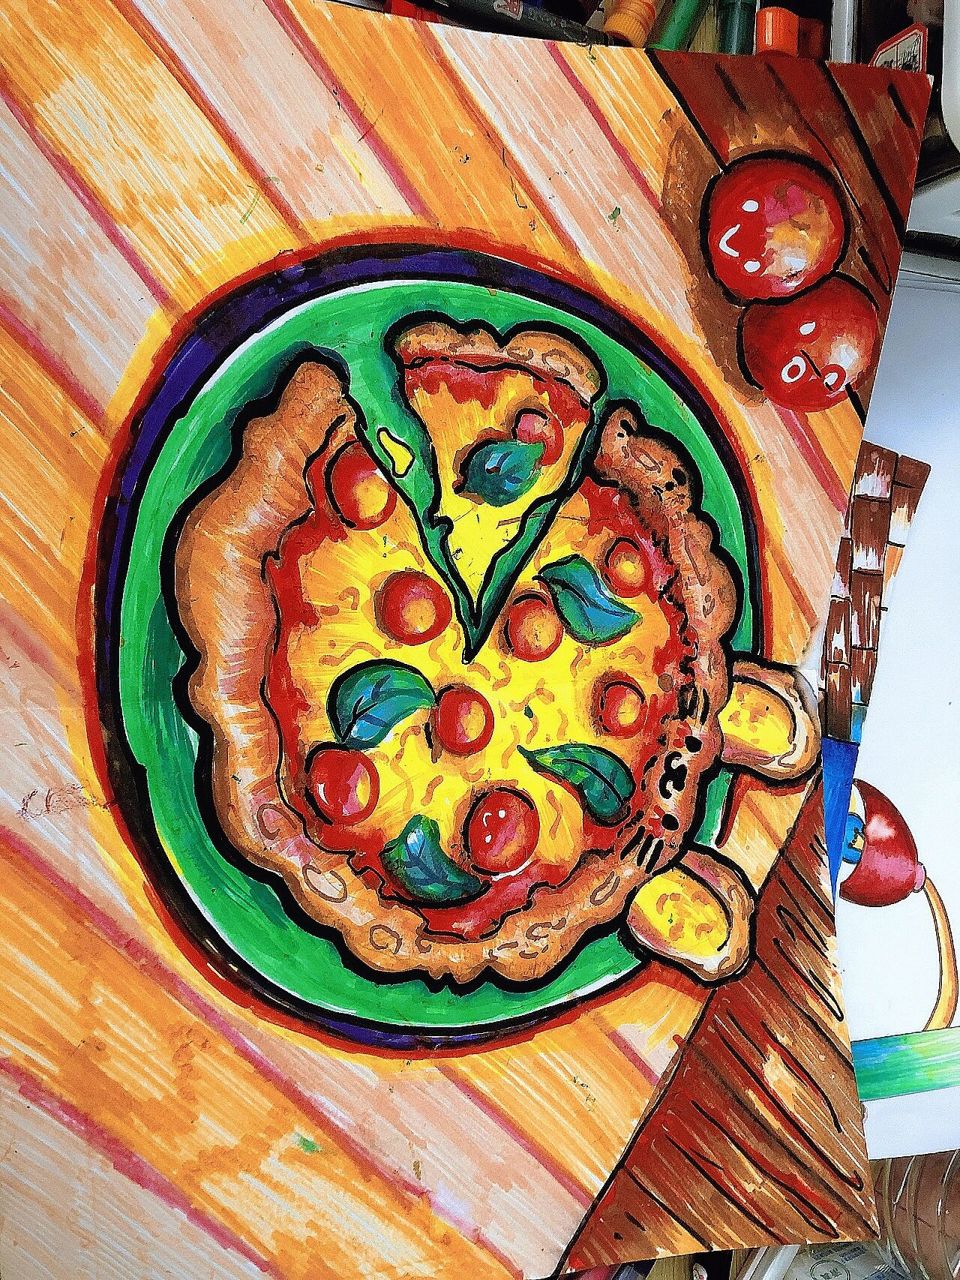 披萨图片简笔画上色图片